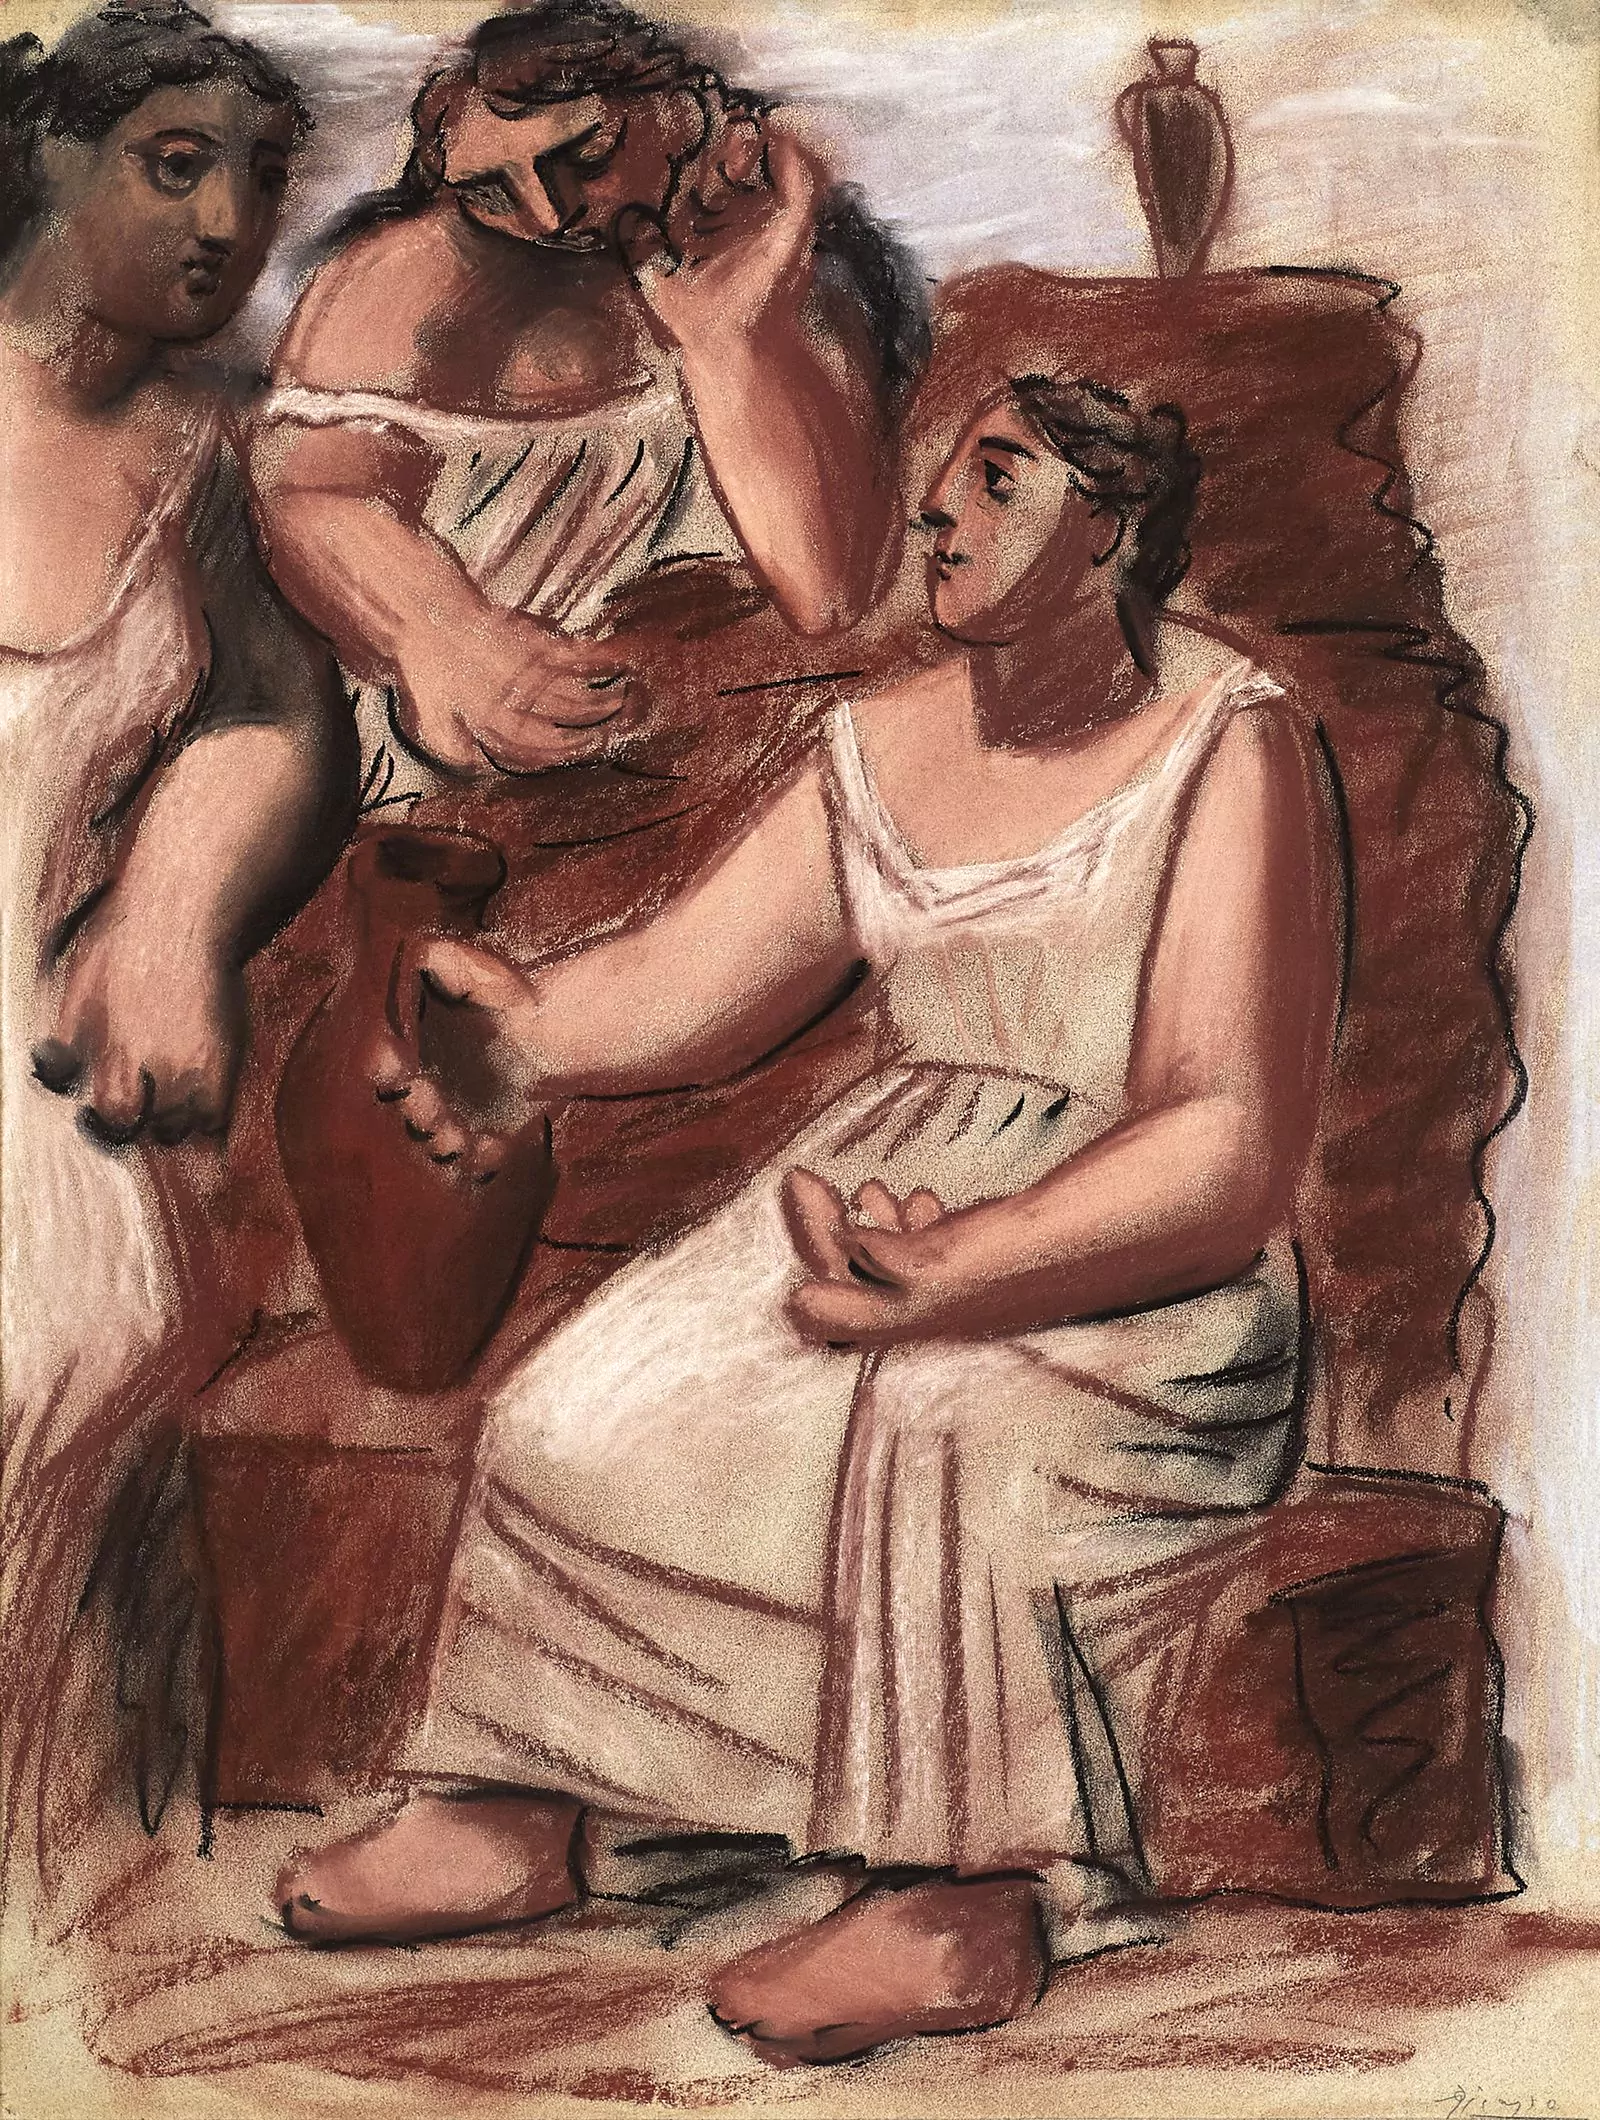 Пабло Пикассо. «Tres mujeres en la fuente» («Три женщины у фонтана»), 1921 г.